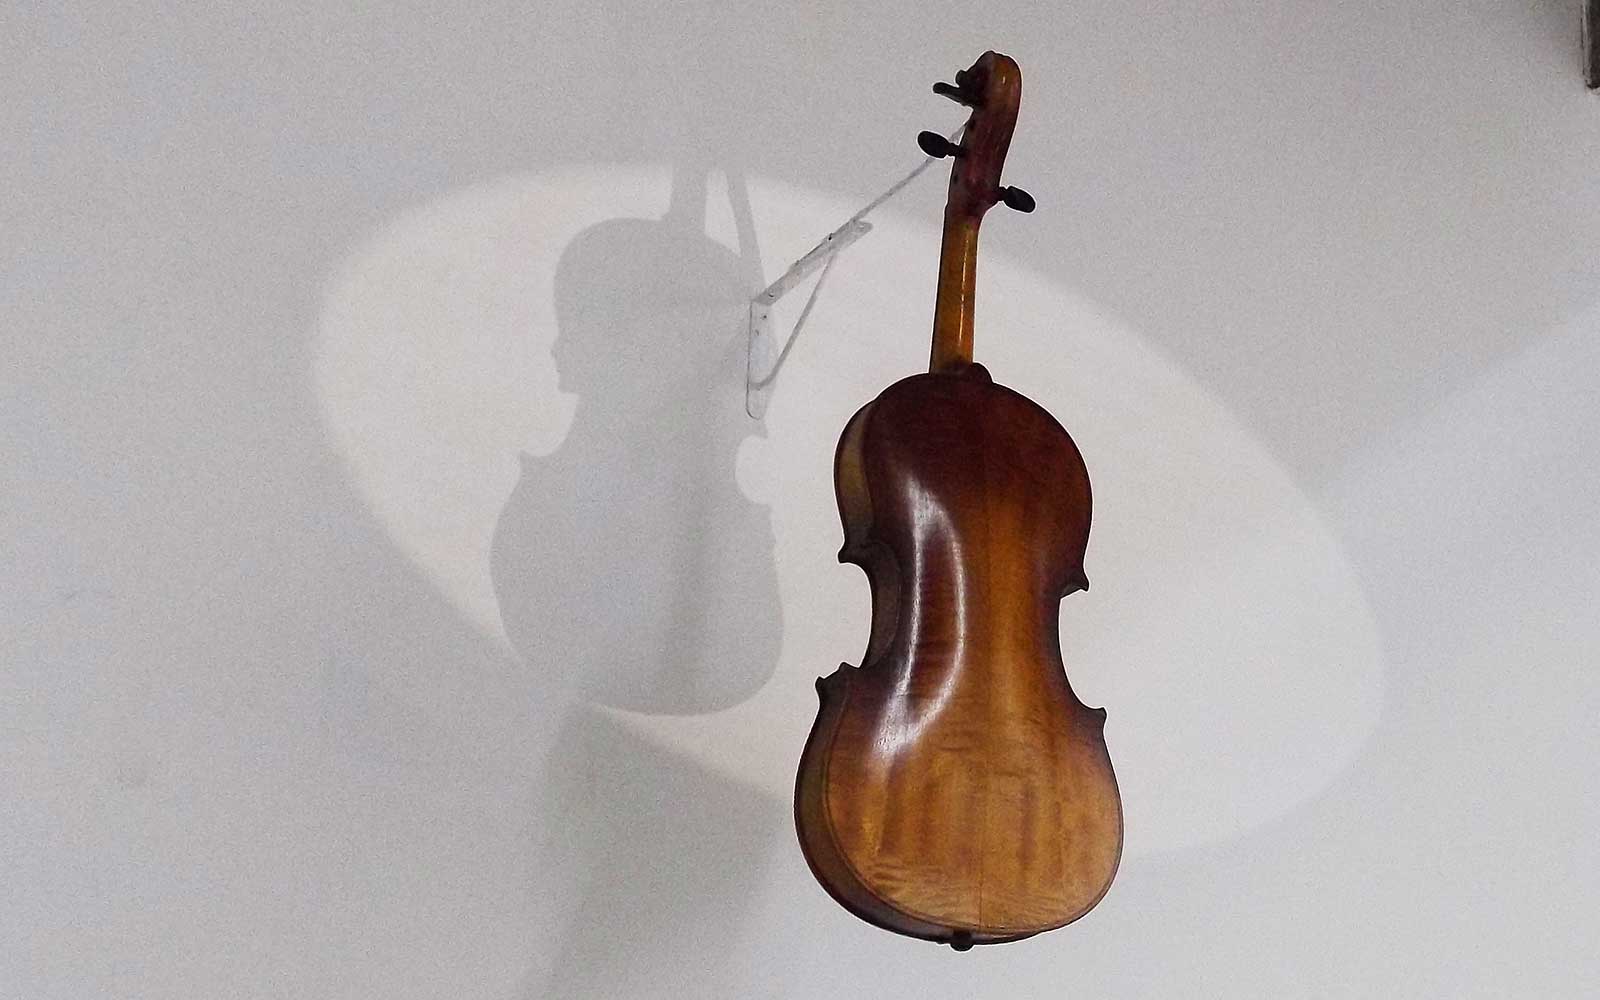 Uncle's keepsake violin